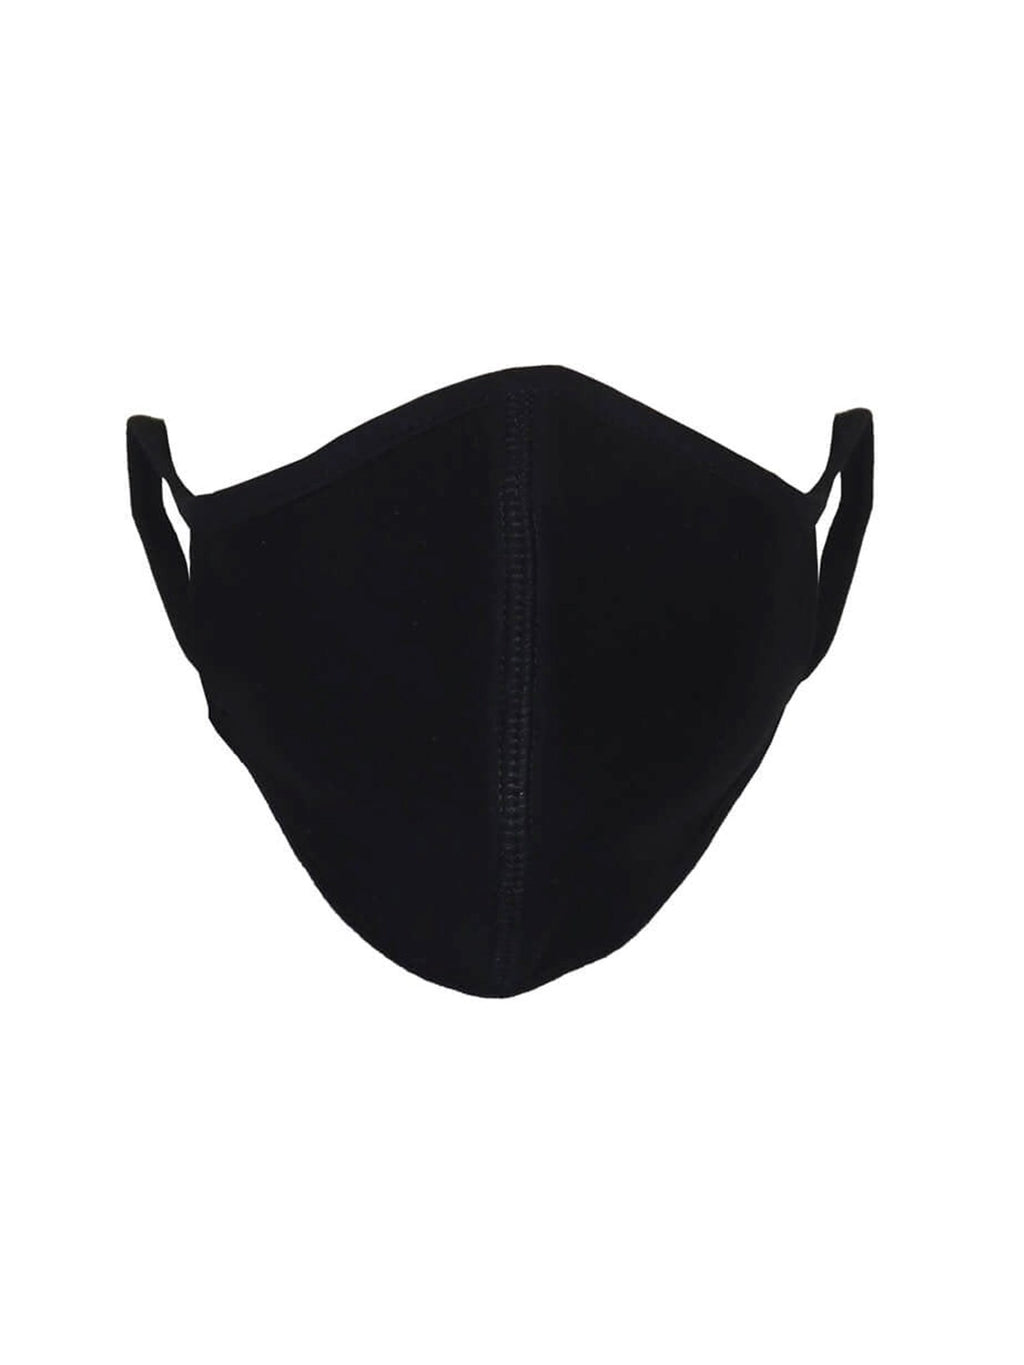 10 pcs. Fabric mask with 3 layers - Black (organic cotton)